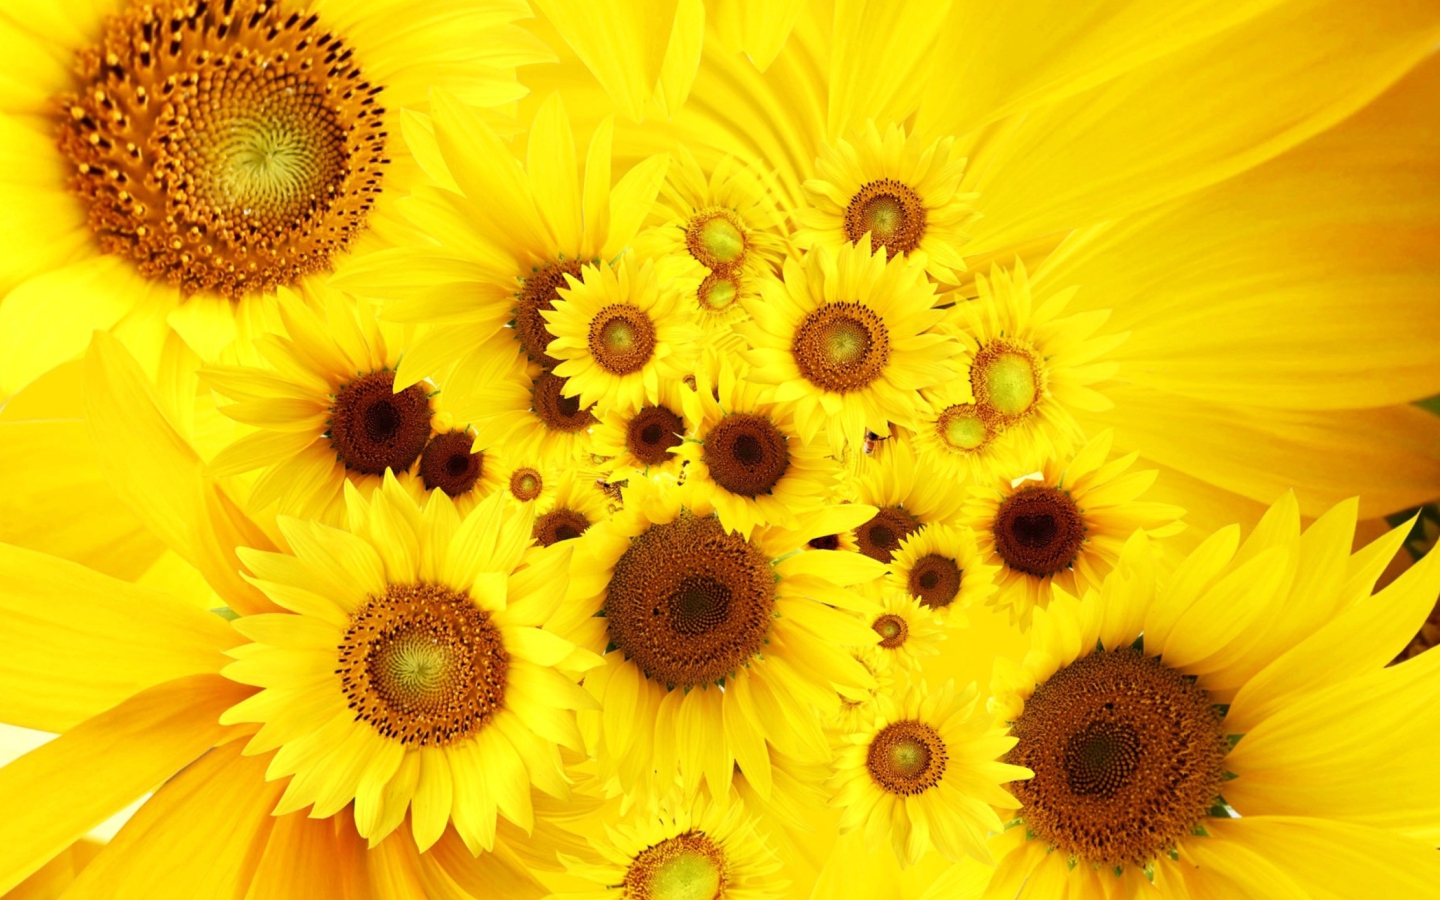 Обои Cool Sunflowers 1440x900